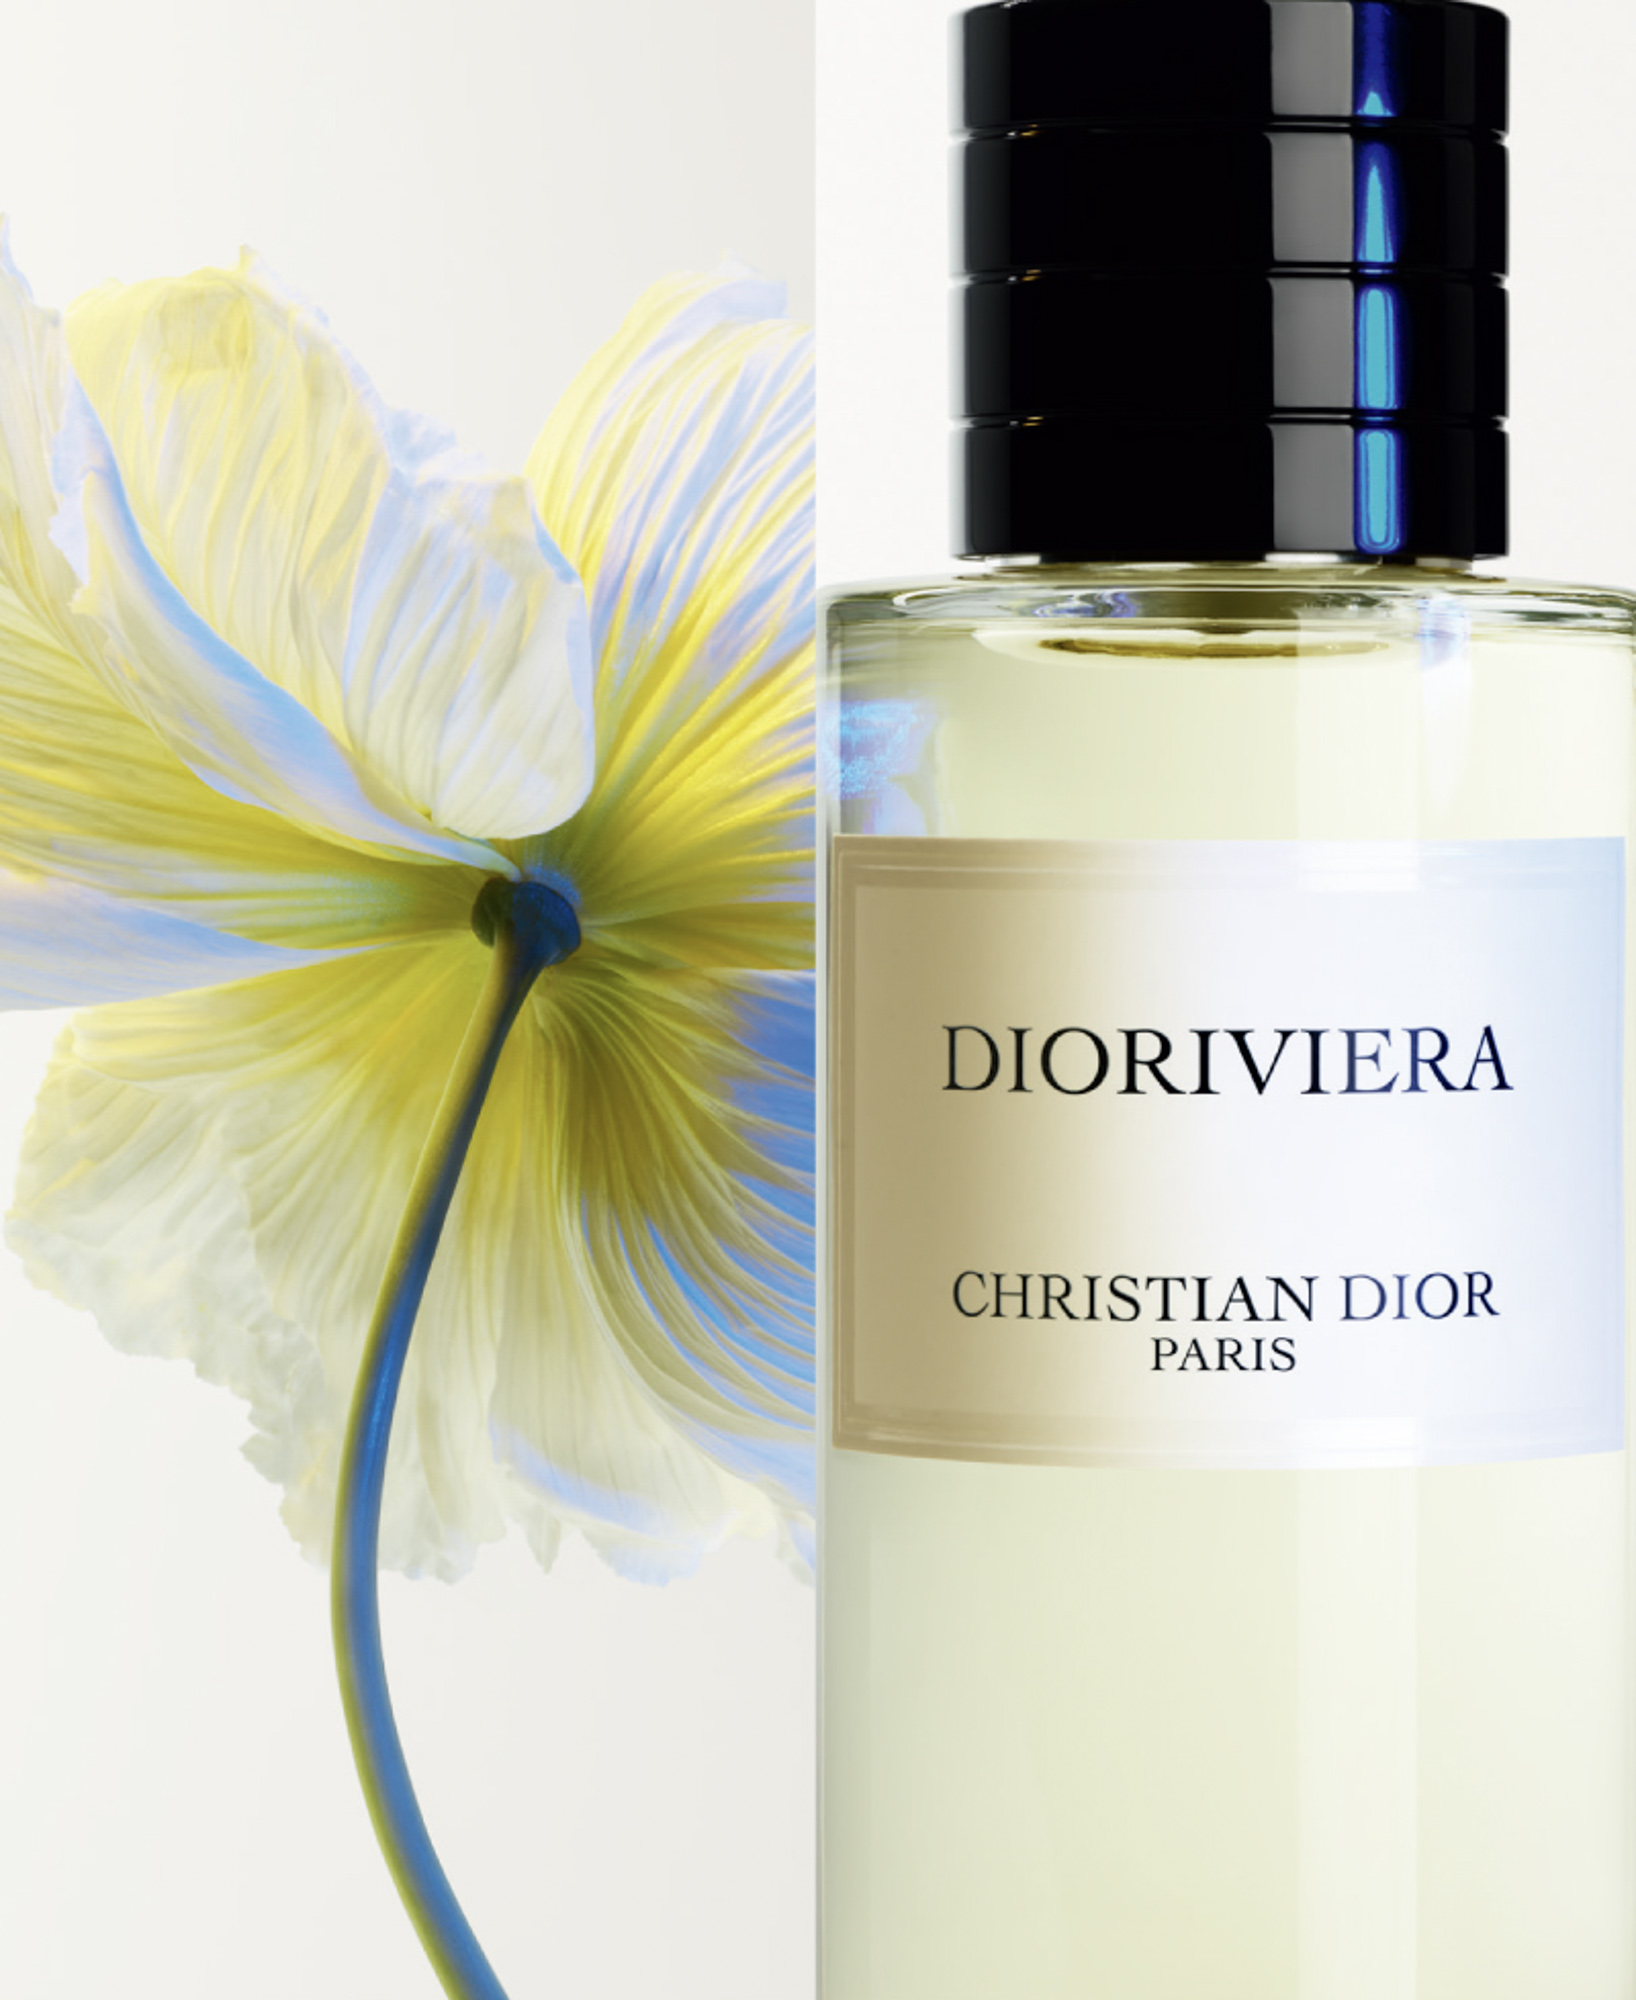 メゾン クリスチャン ディオールから新作香水「ディオリビエラ」が登場 花々とイチジクの葉が奏でるハーモニー